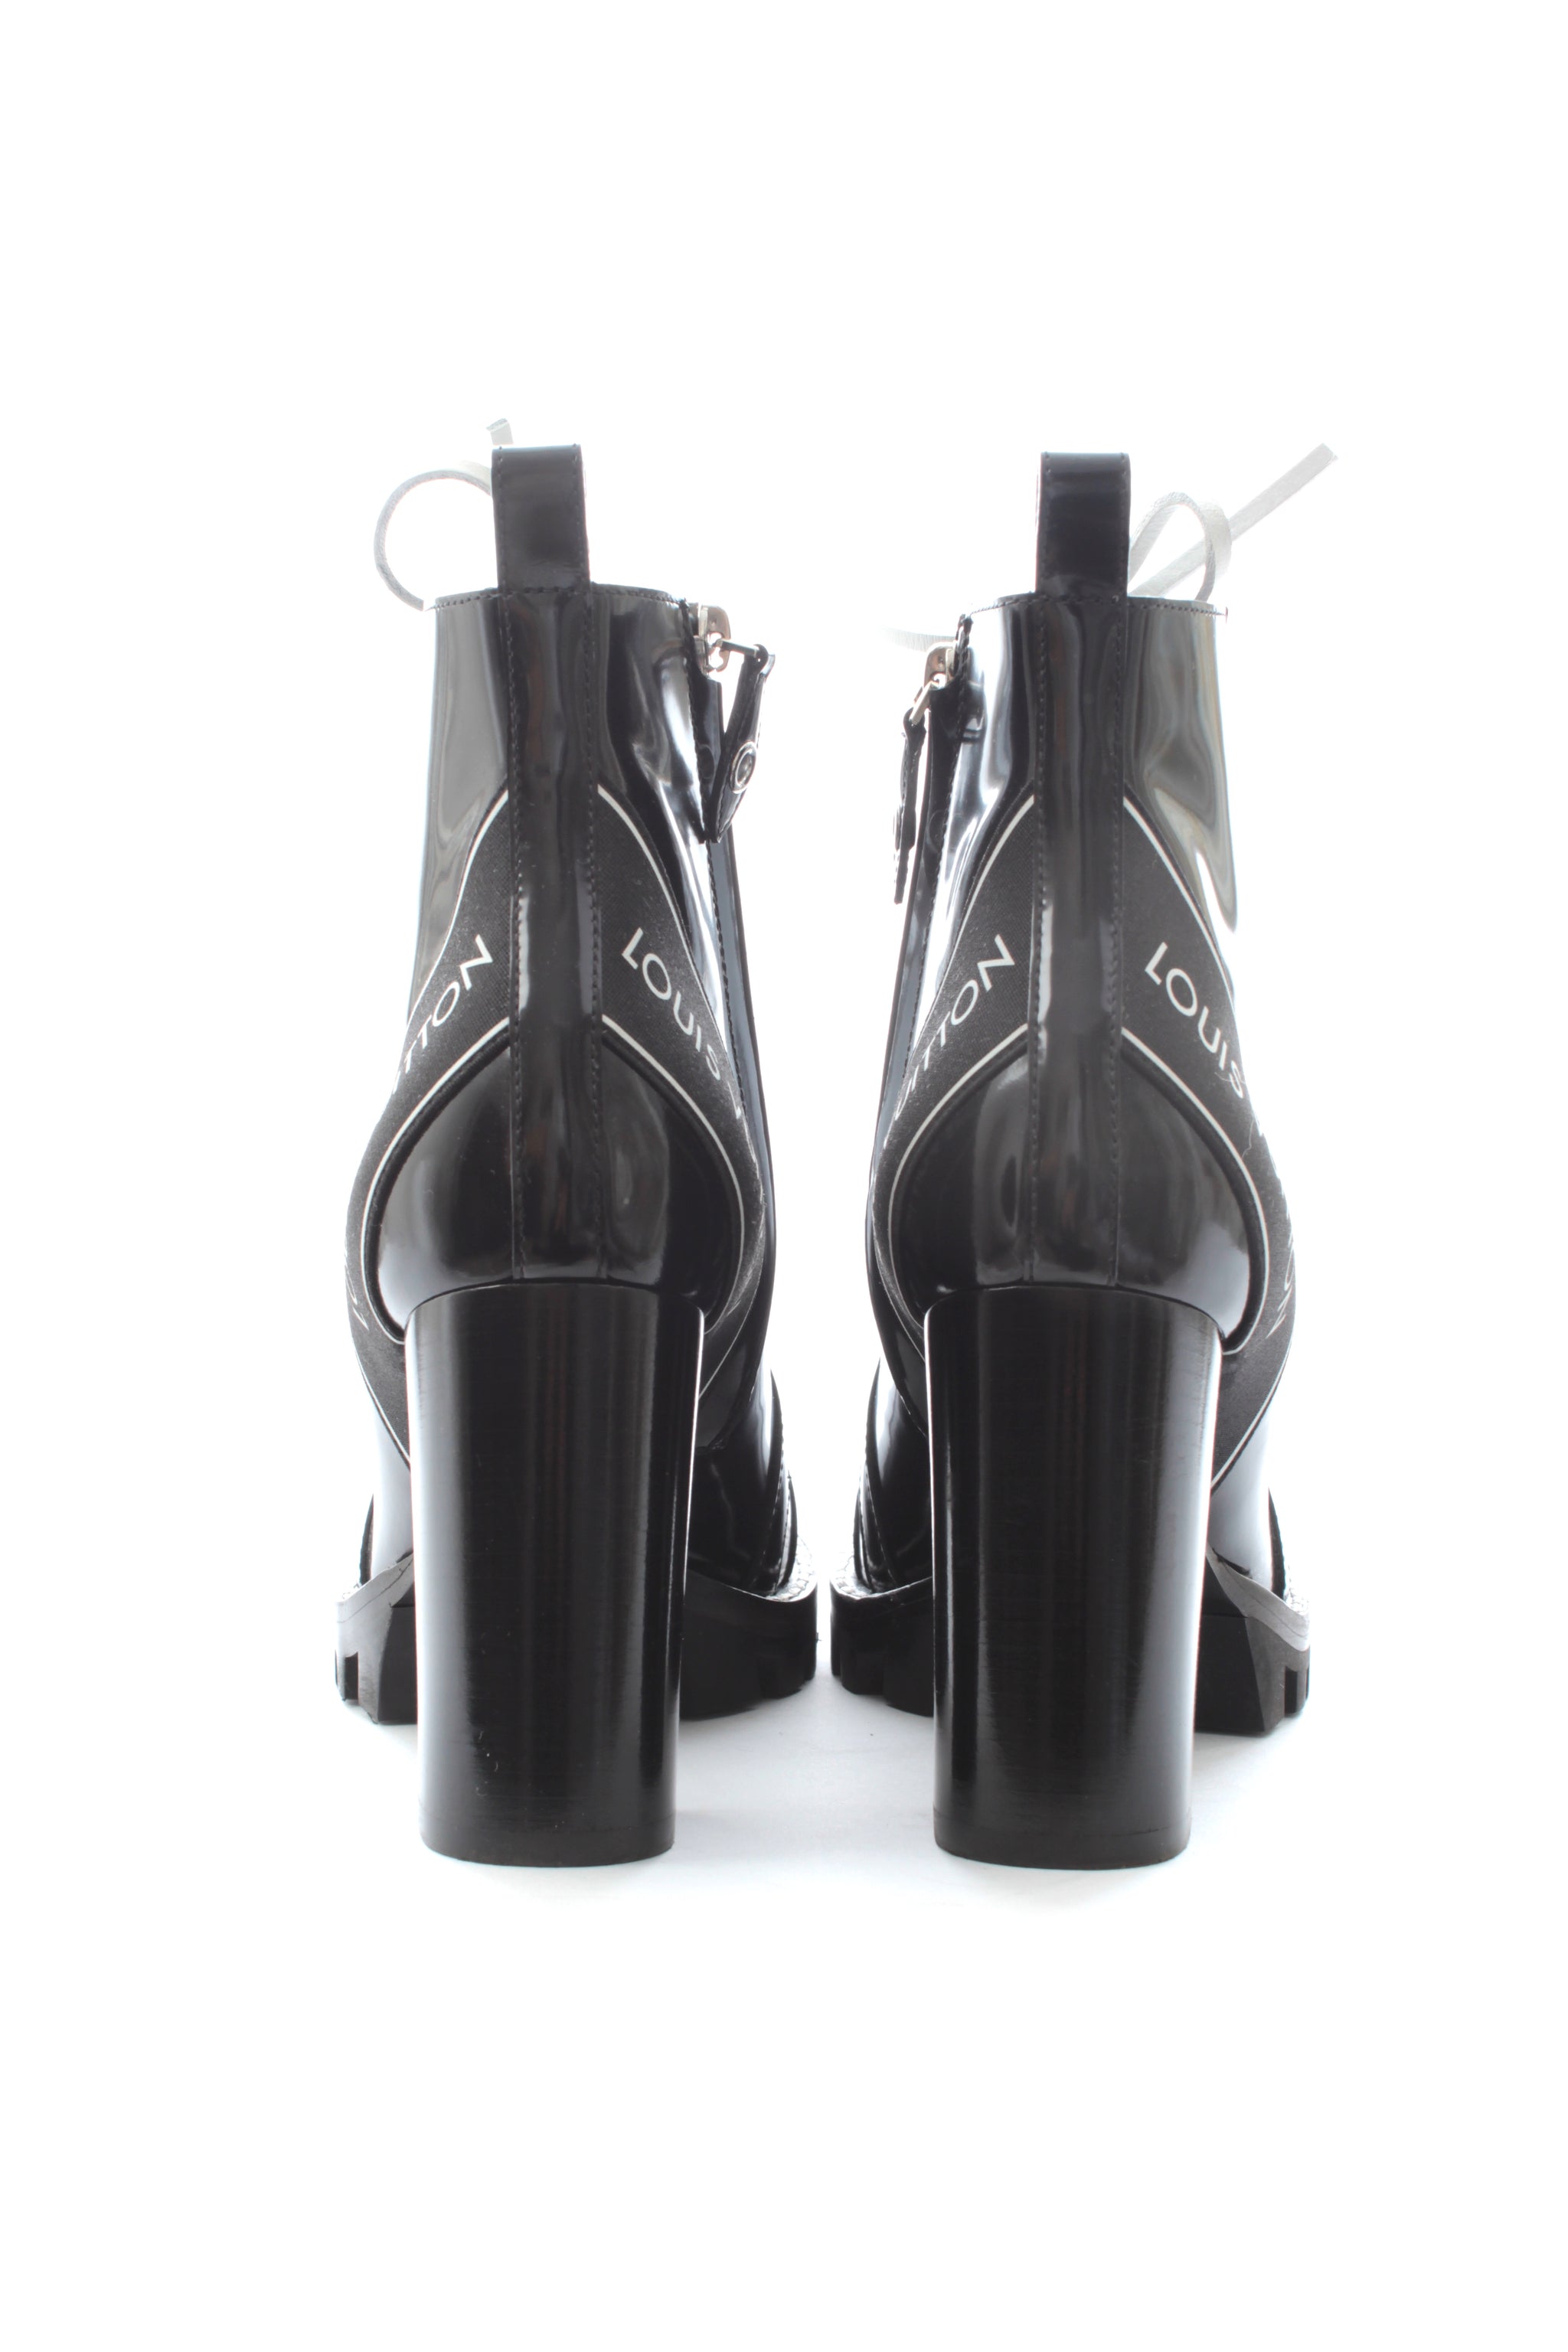 Louis Vuitton Aspen Platform Ankle Boot BLACK. Size 37.0